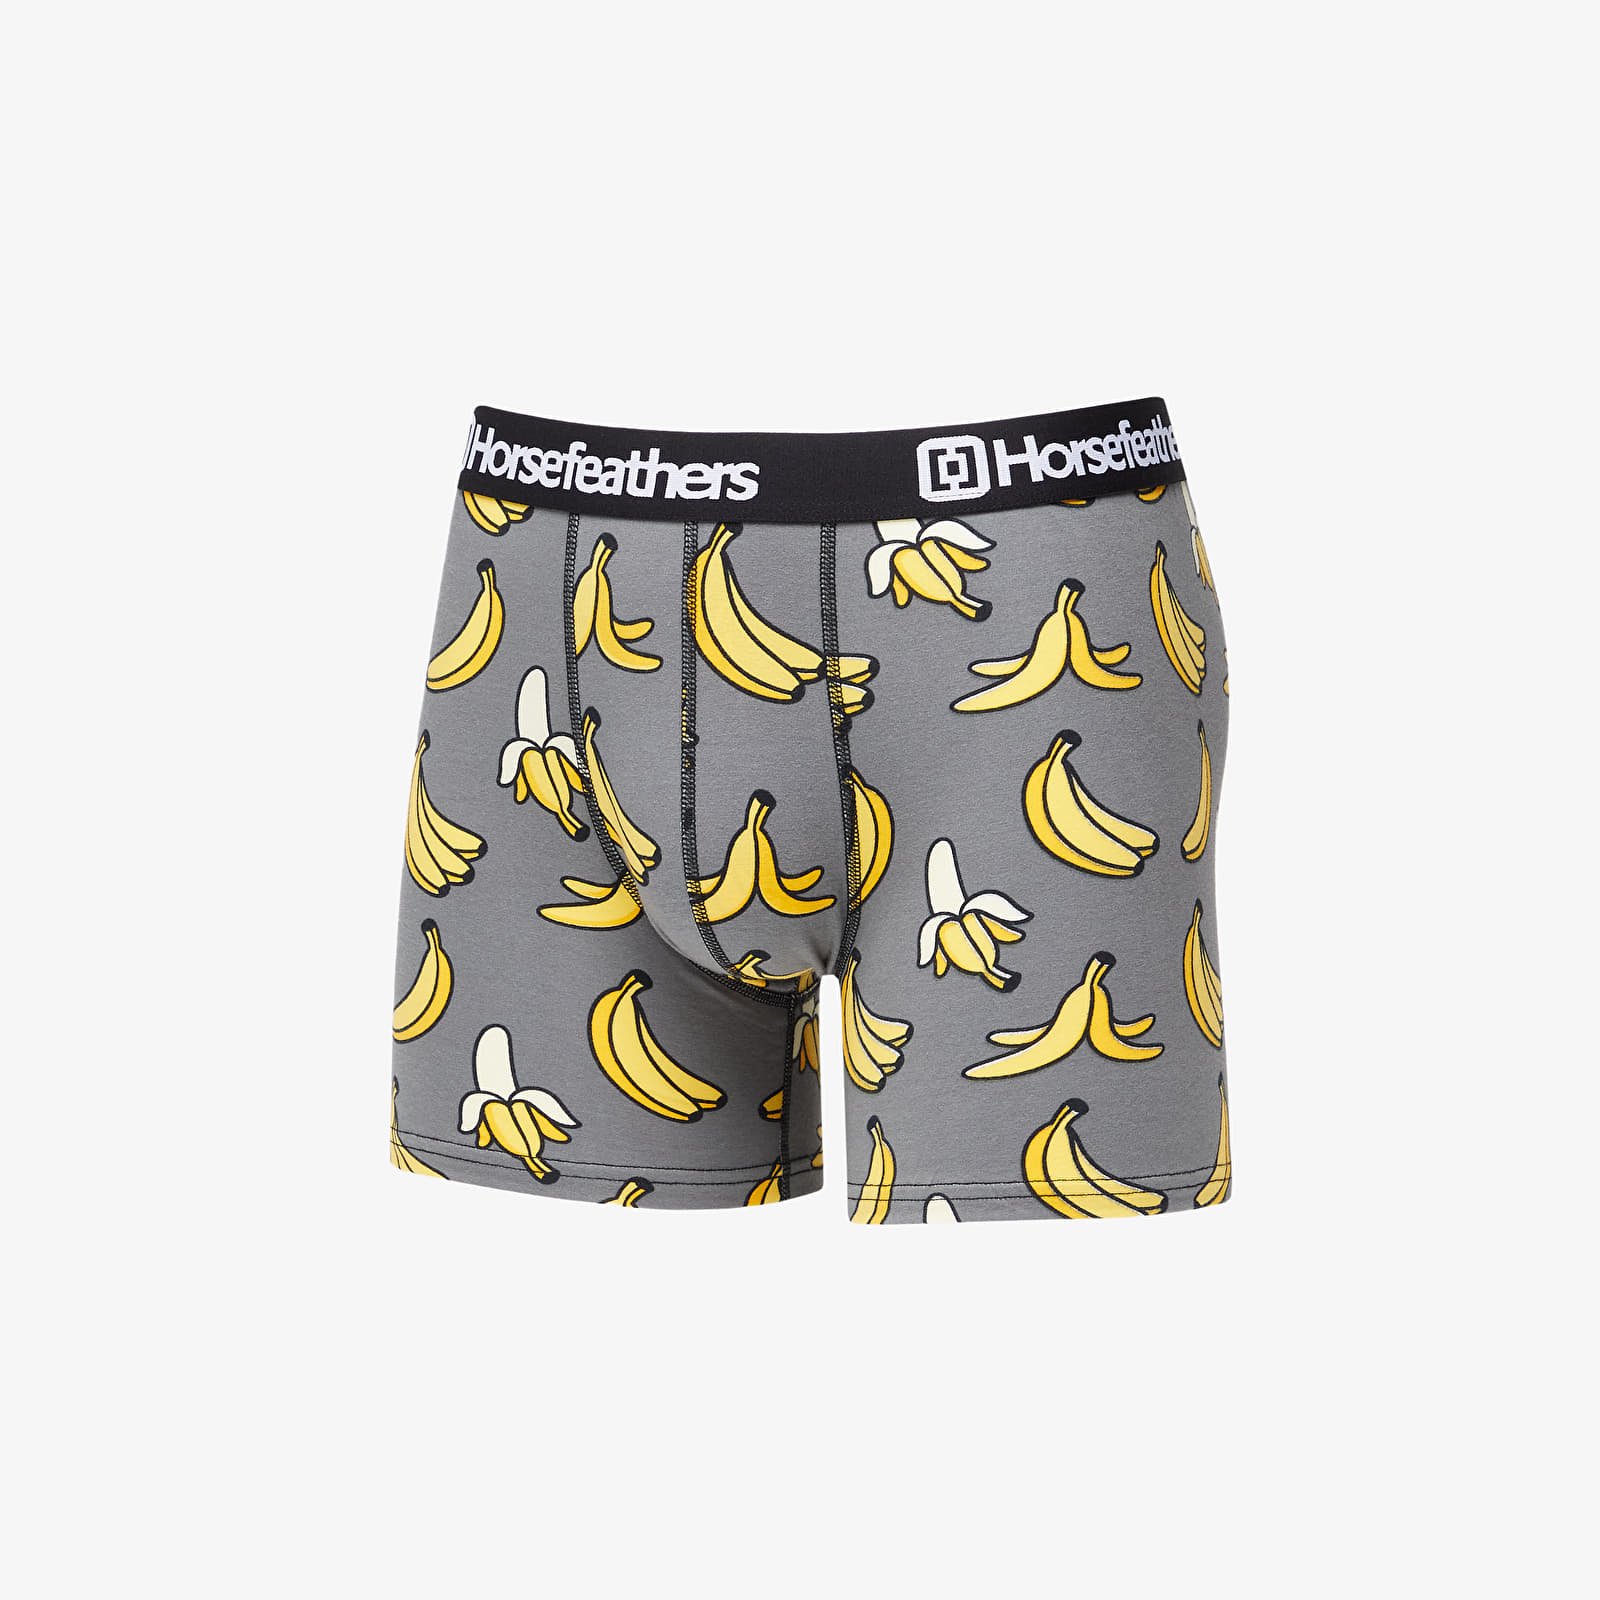 Boxer shorts Horsefeathers Sidney Boxer Shorts Grey/ Bananas Print